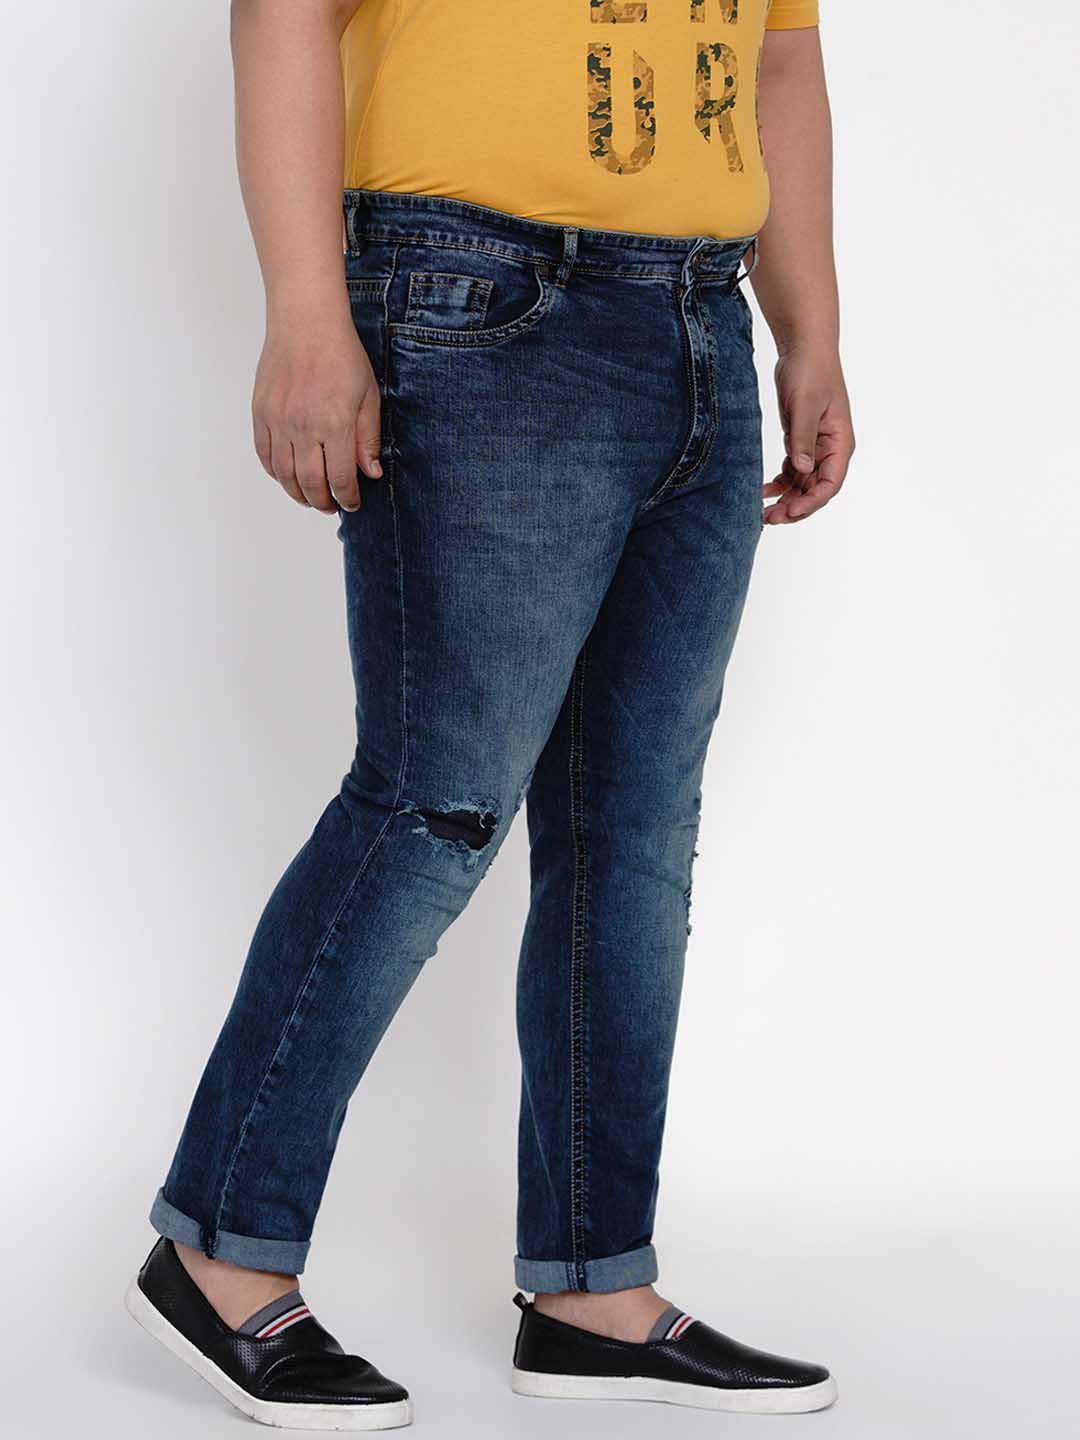 bottomwear/jeans/JPJ12111/jpj12111-3.jpg